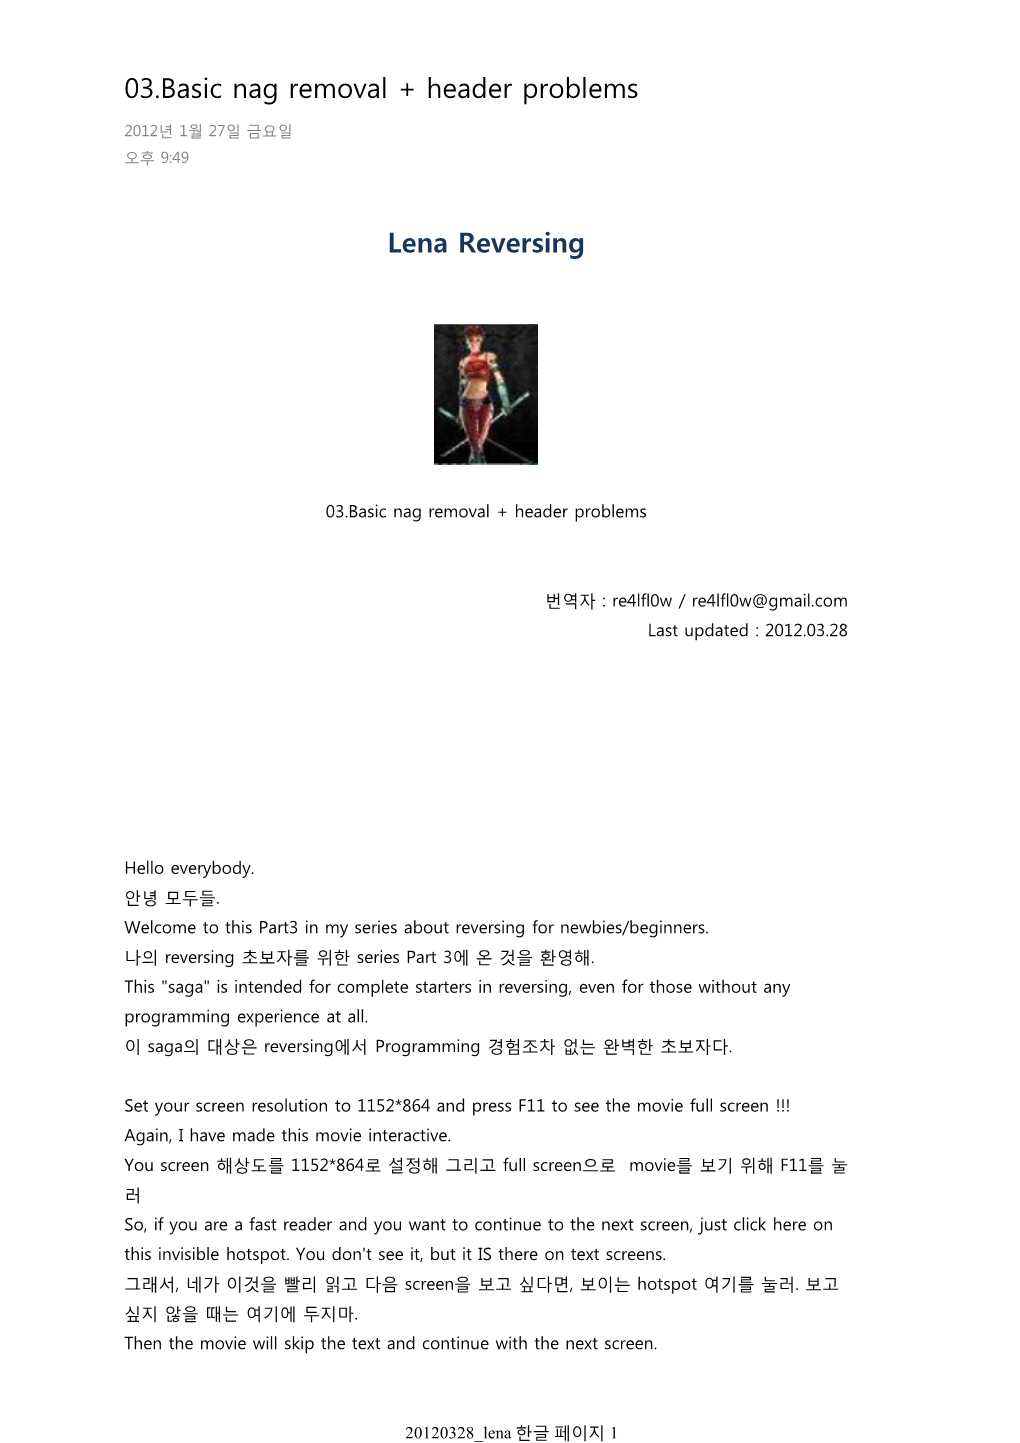 Lena Reversing